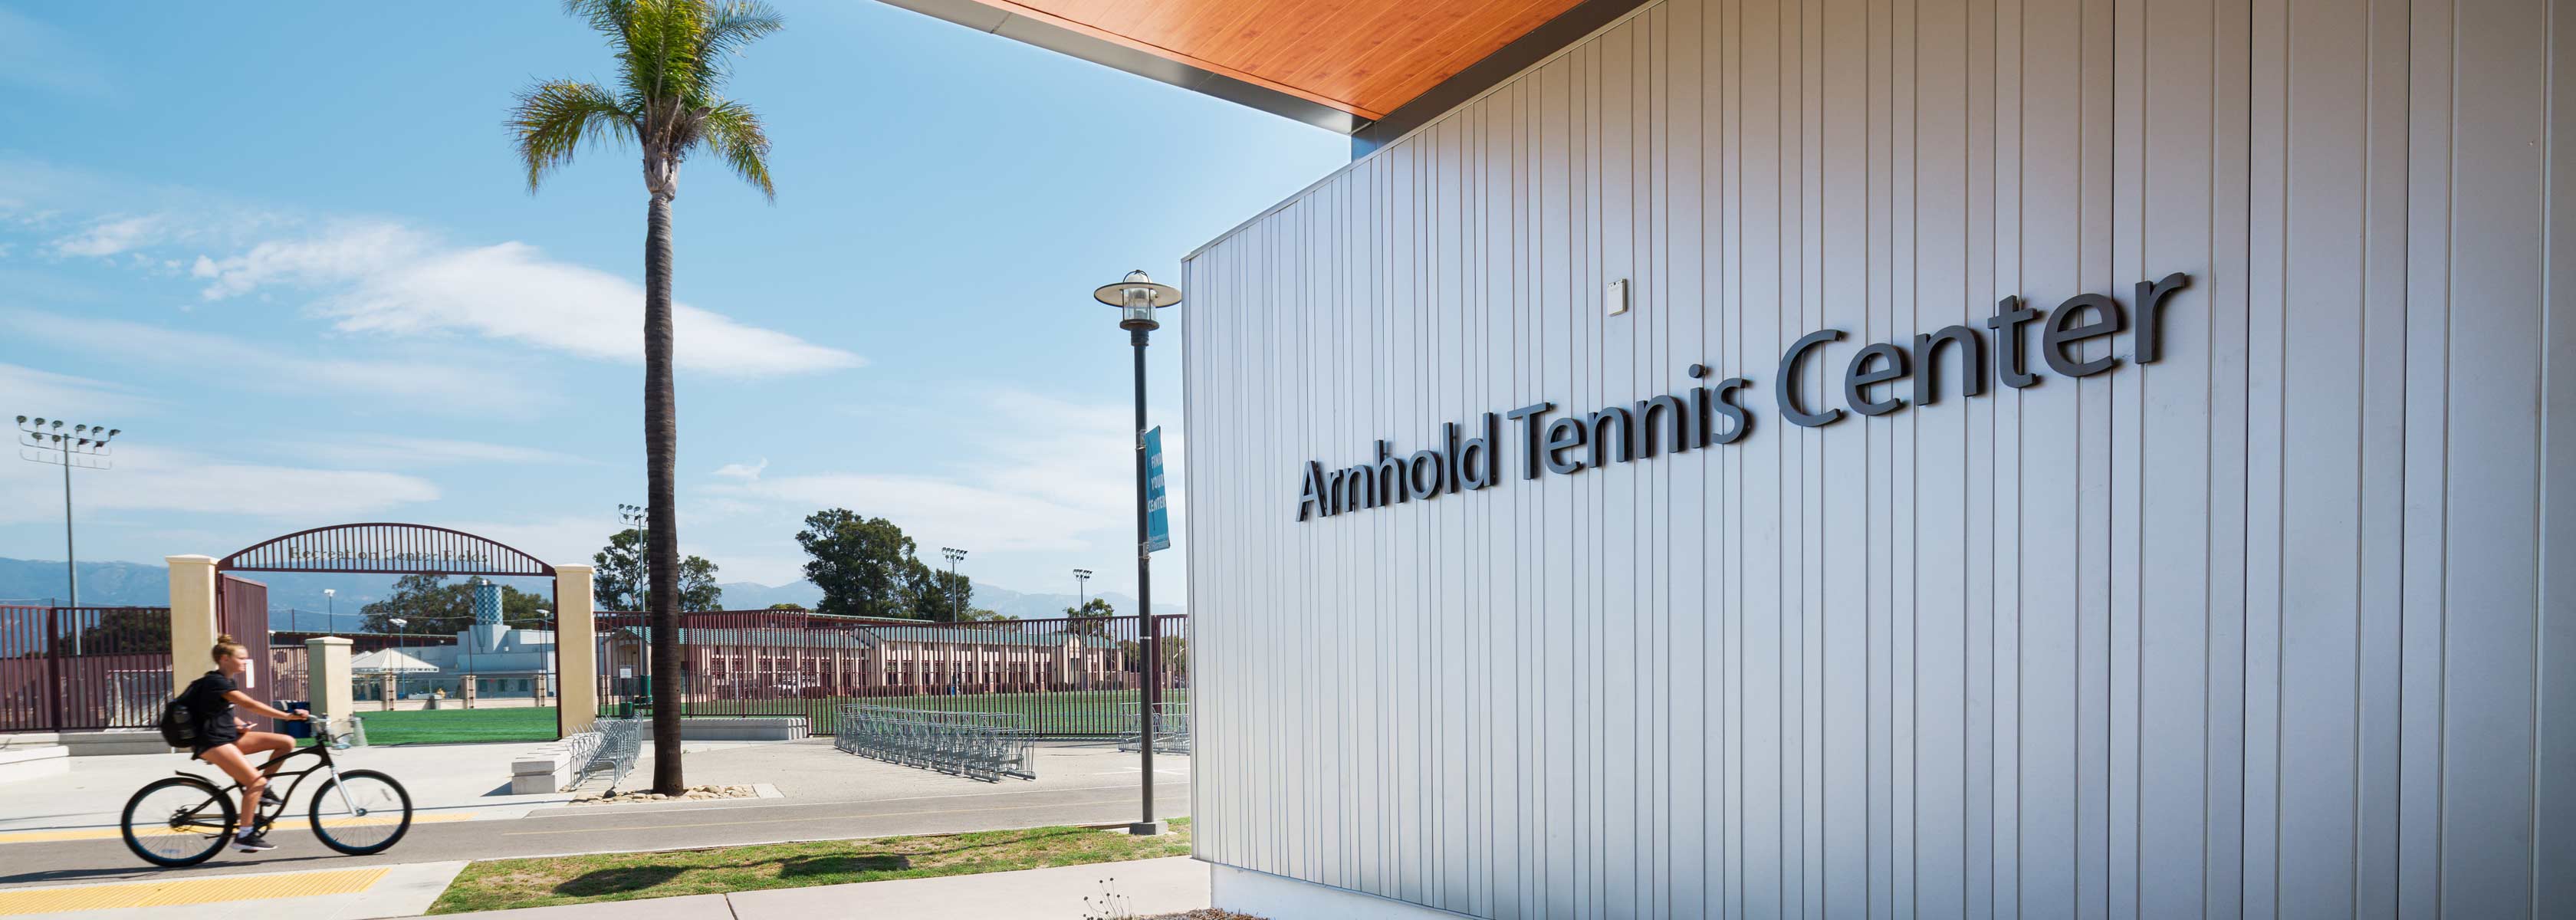 Arnhold Tennis Center entrance